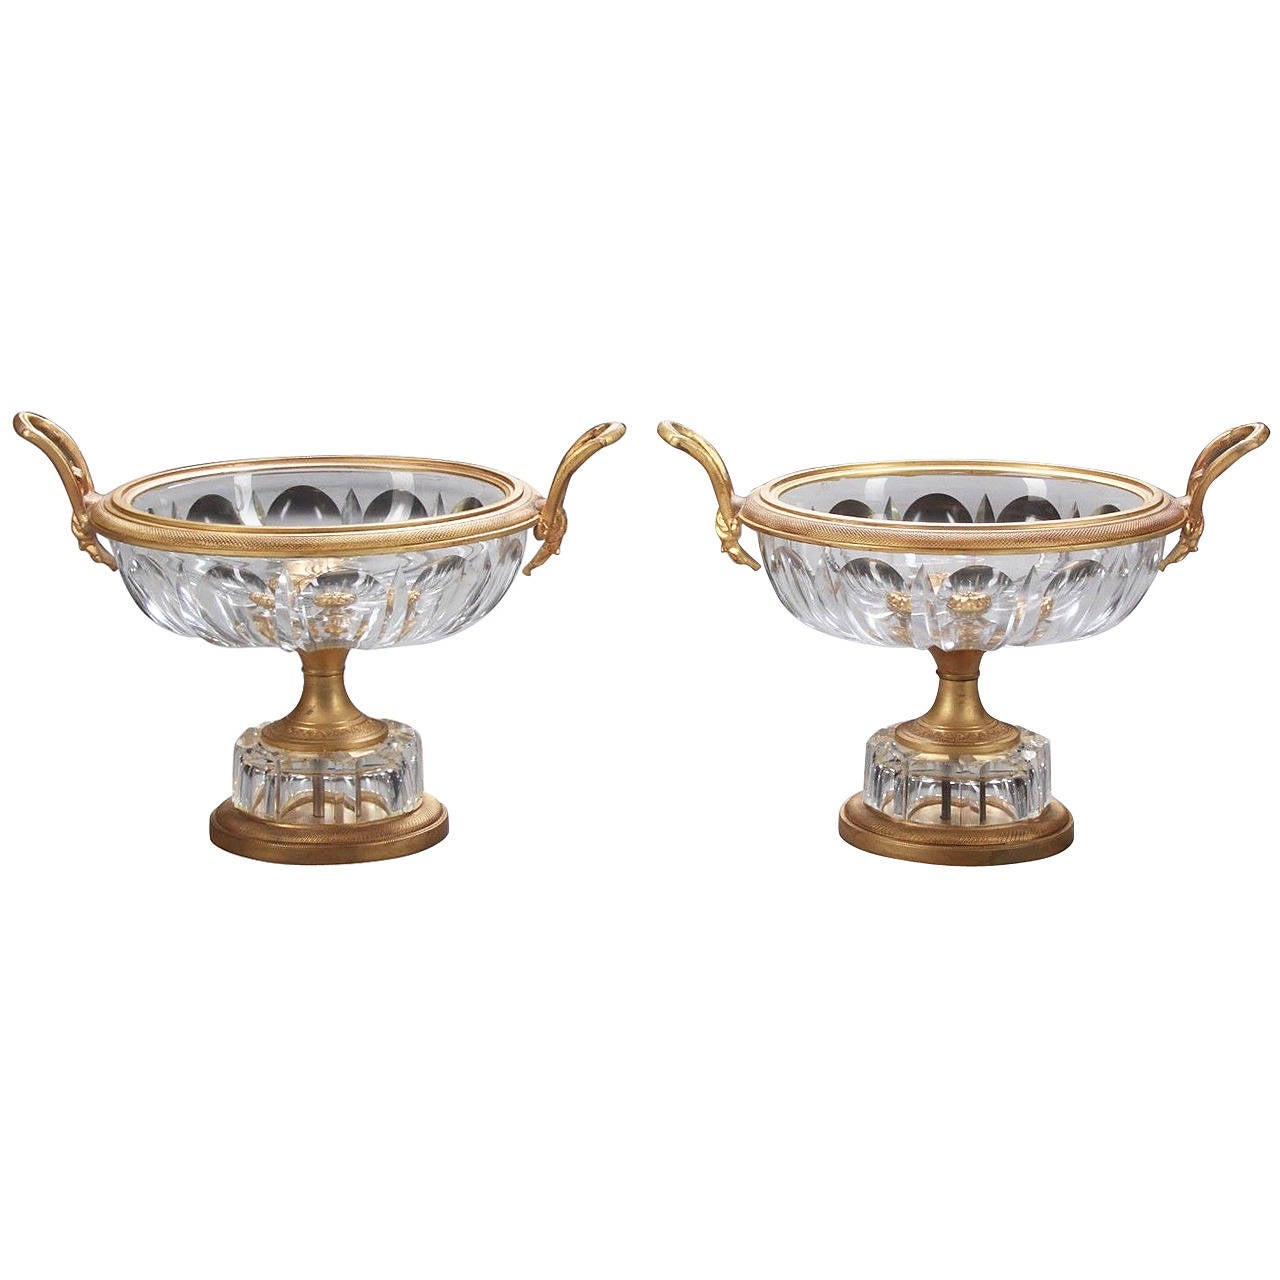 Paar französische Kompottschalen aus vergoldeter Bronze und geschliffenem Kristall des frühen 20. Jahrhunderts